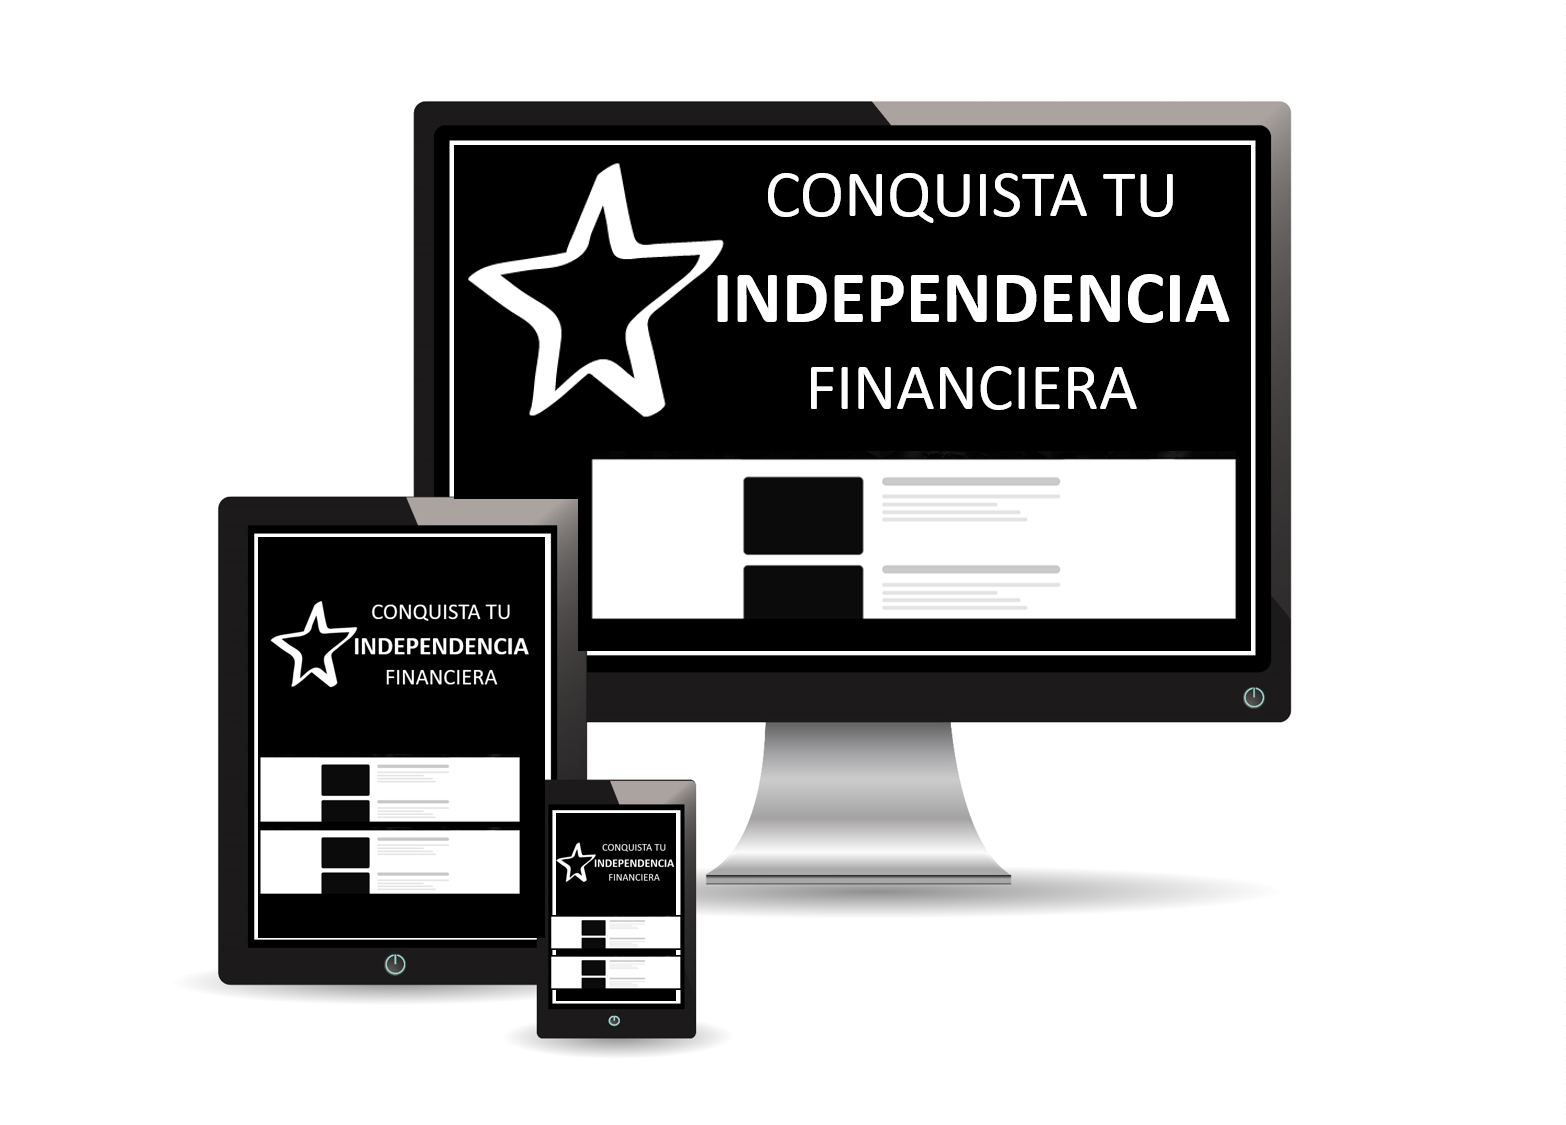 Curso de Conquista tu Independencia Financiera